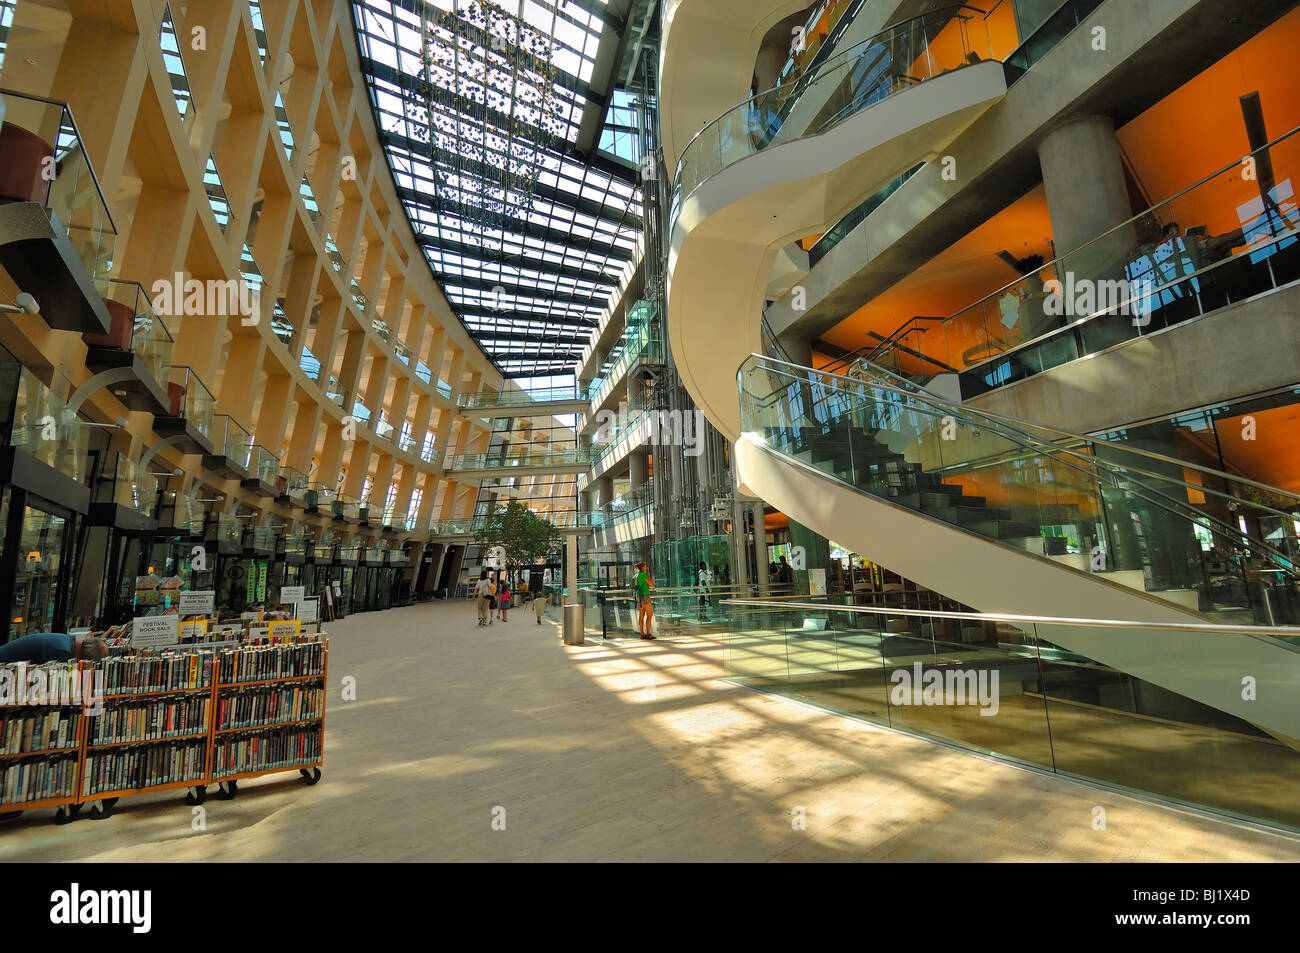 Als ein Beispiel für hervorragende bürgerliche Architektur der City Public Library in Salt Lake City hat ein hohes Renommee, Utah Stockfoto